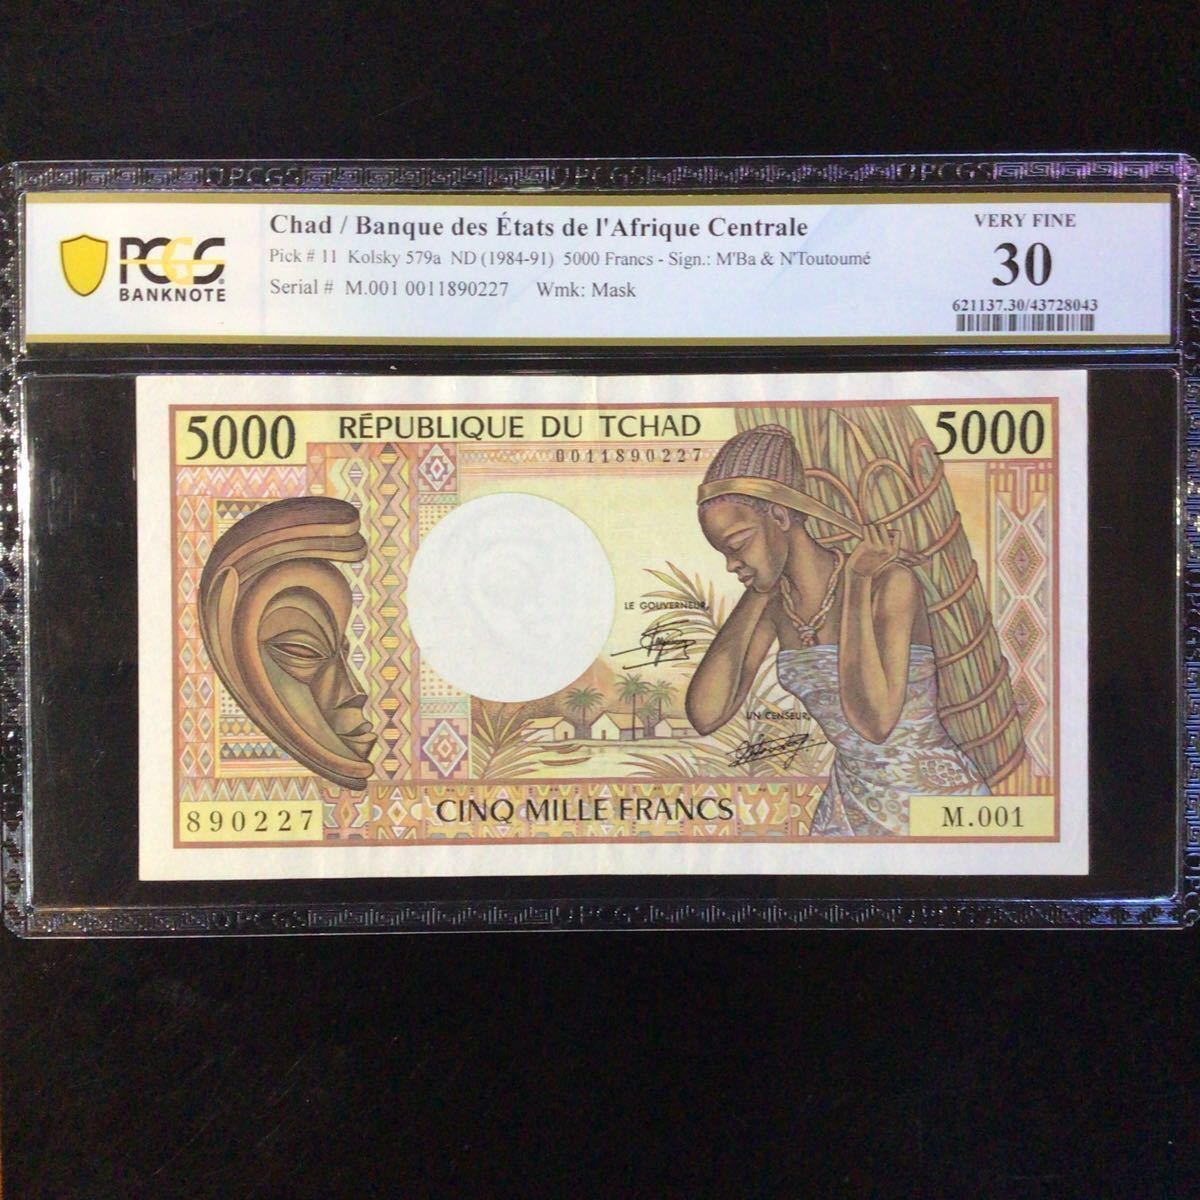 World Banknote Grading CHAD《Banque des Etats de I' Afrique Centrale》5000 Francs【1984-91】『PCGS Grading Very Fine 30』